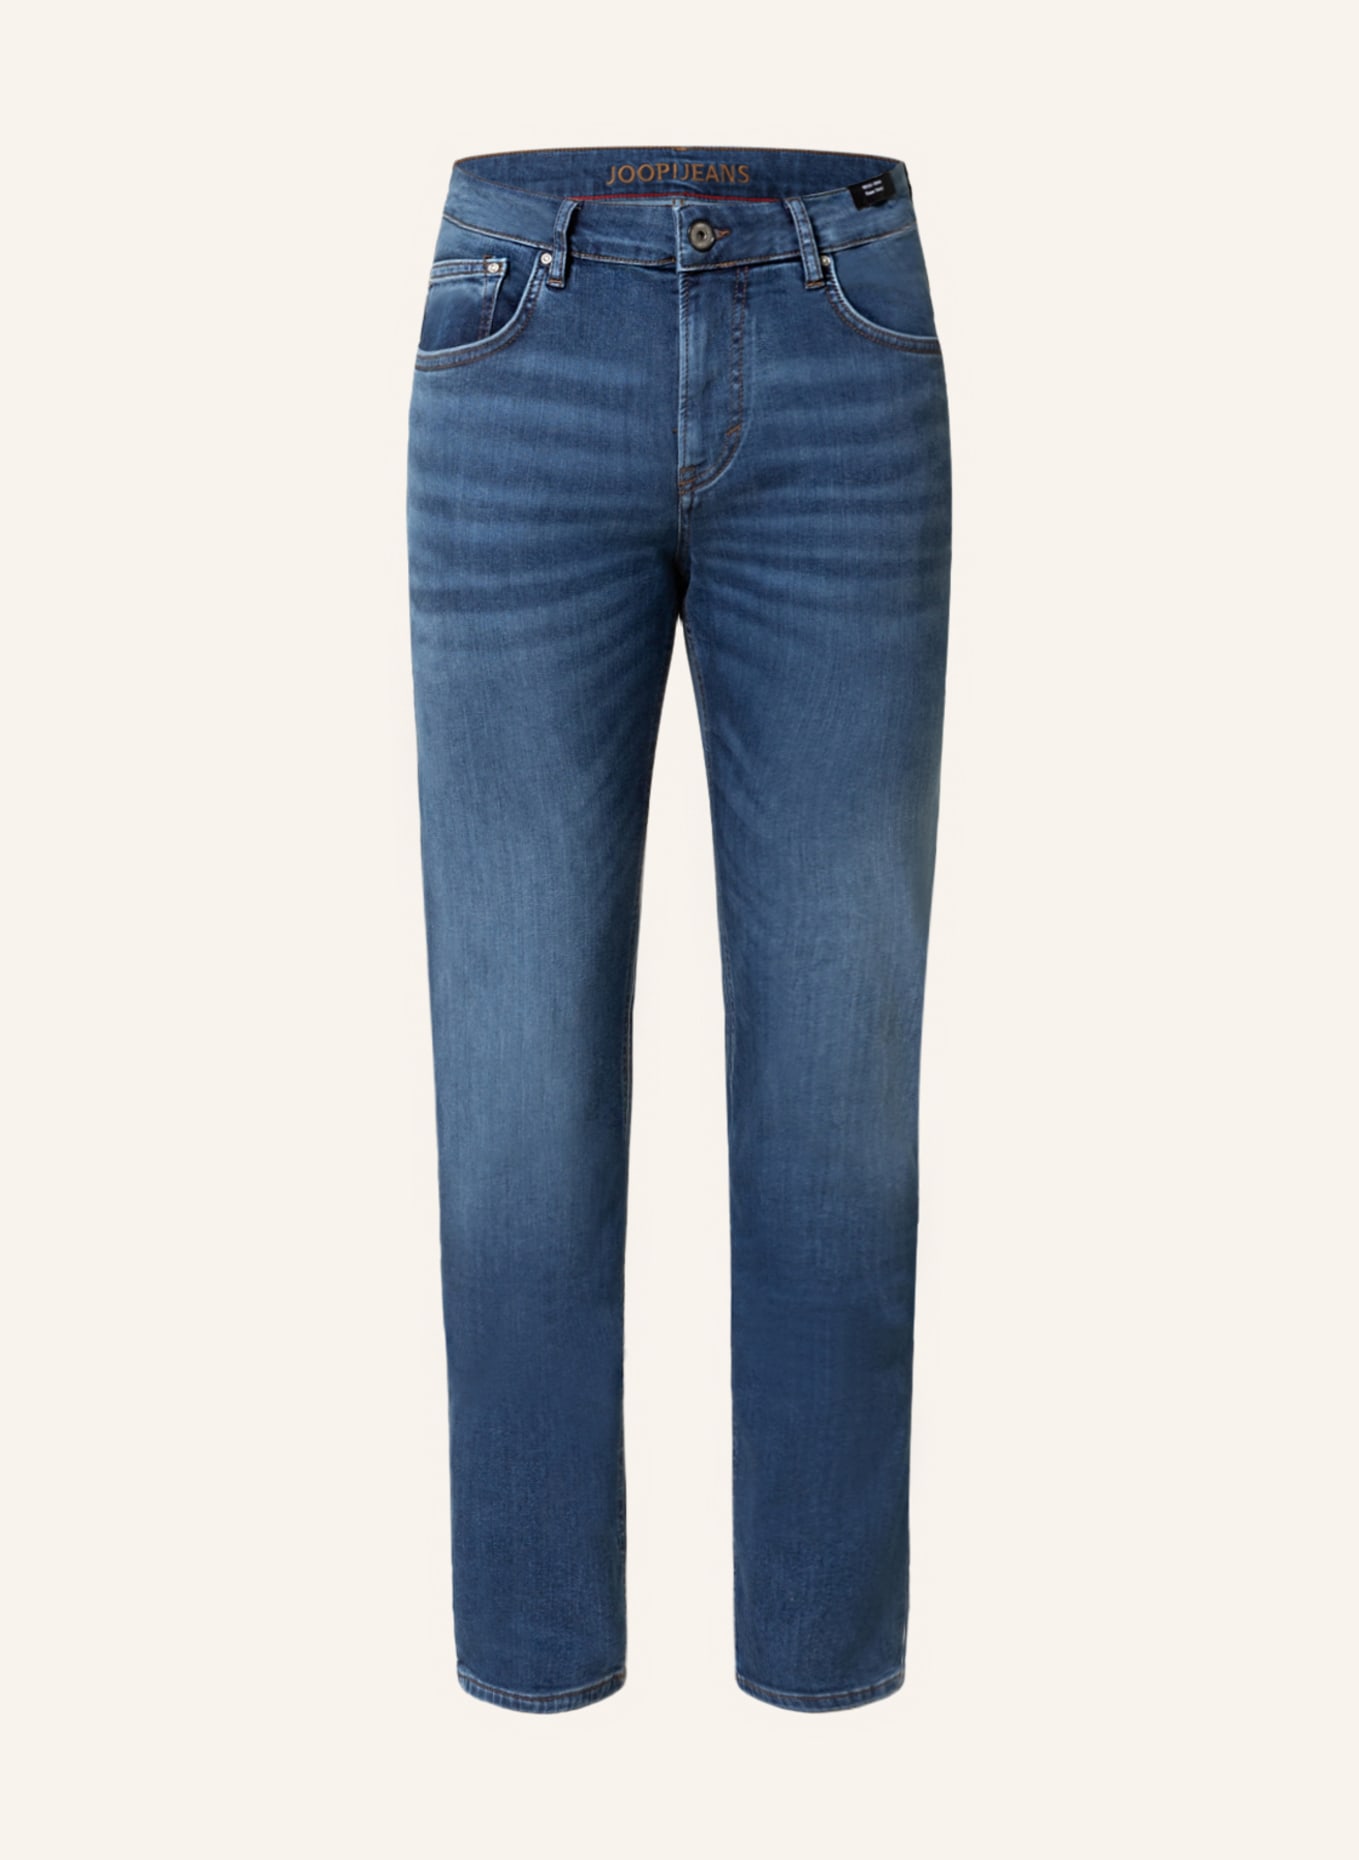 JOOP! JEANS Jeans MITCH Modern Fit, Farbe: 435 Bright Blue                435 (Bild 1)